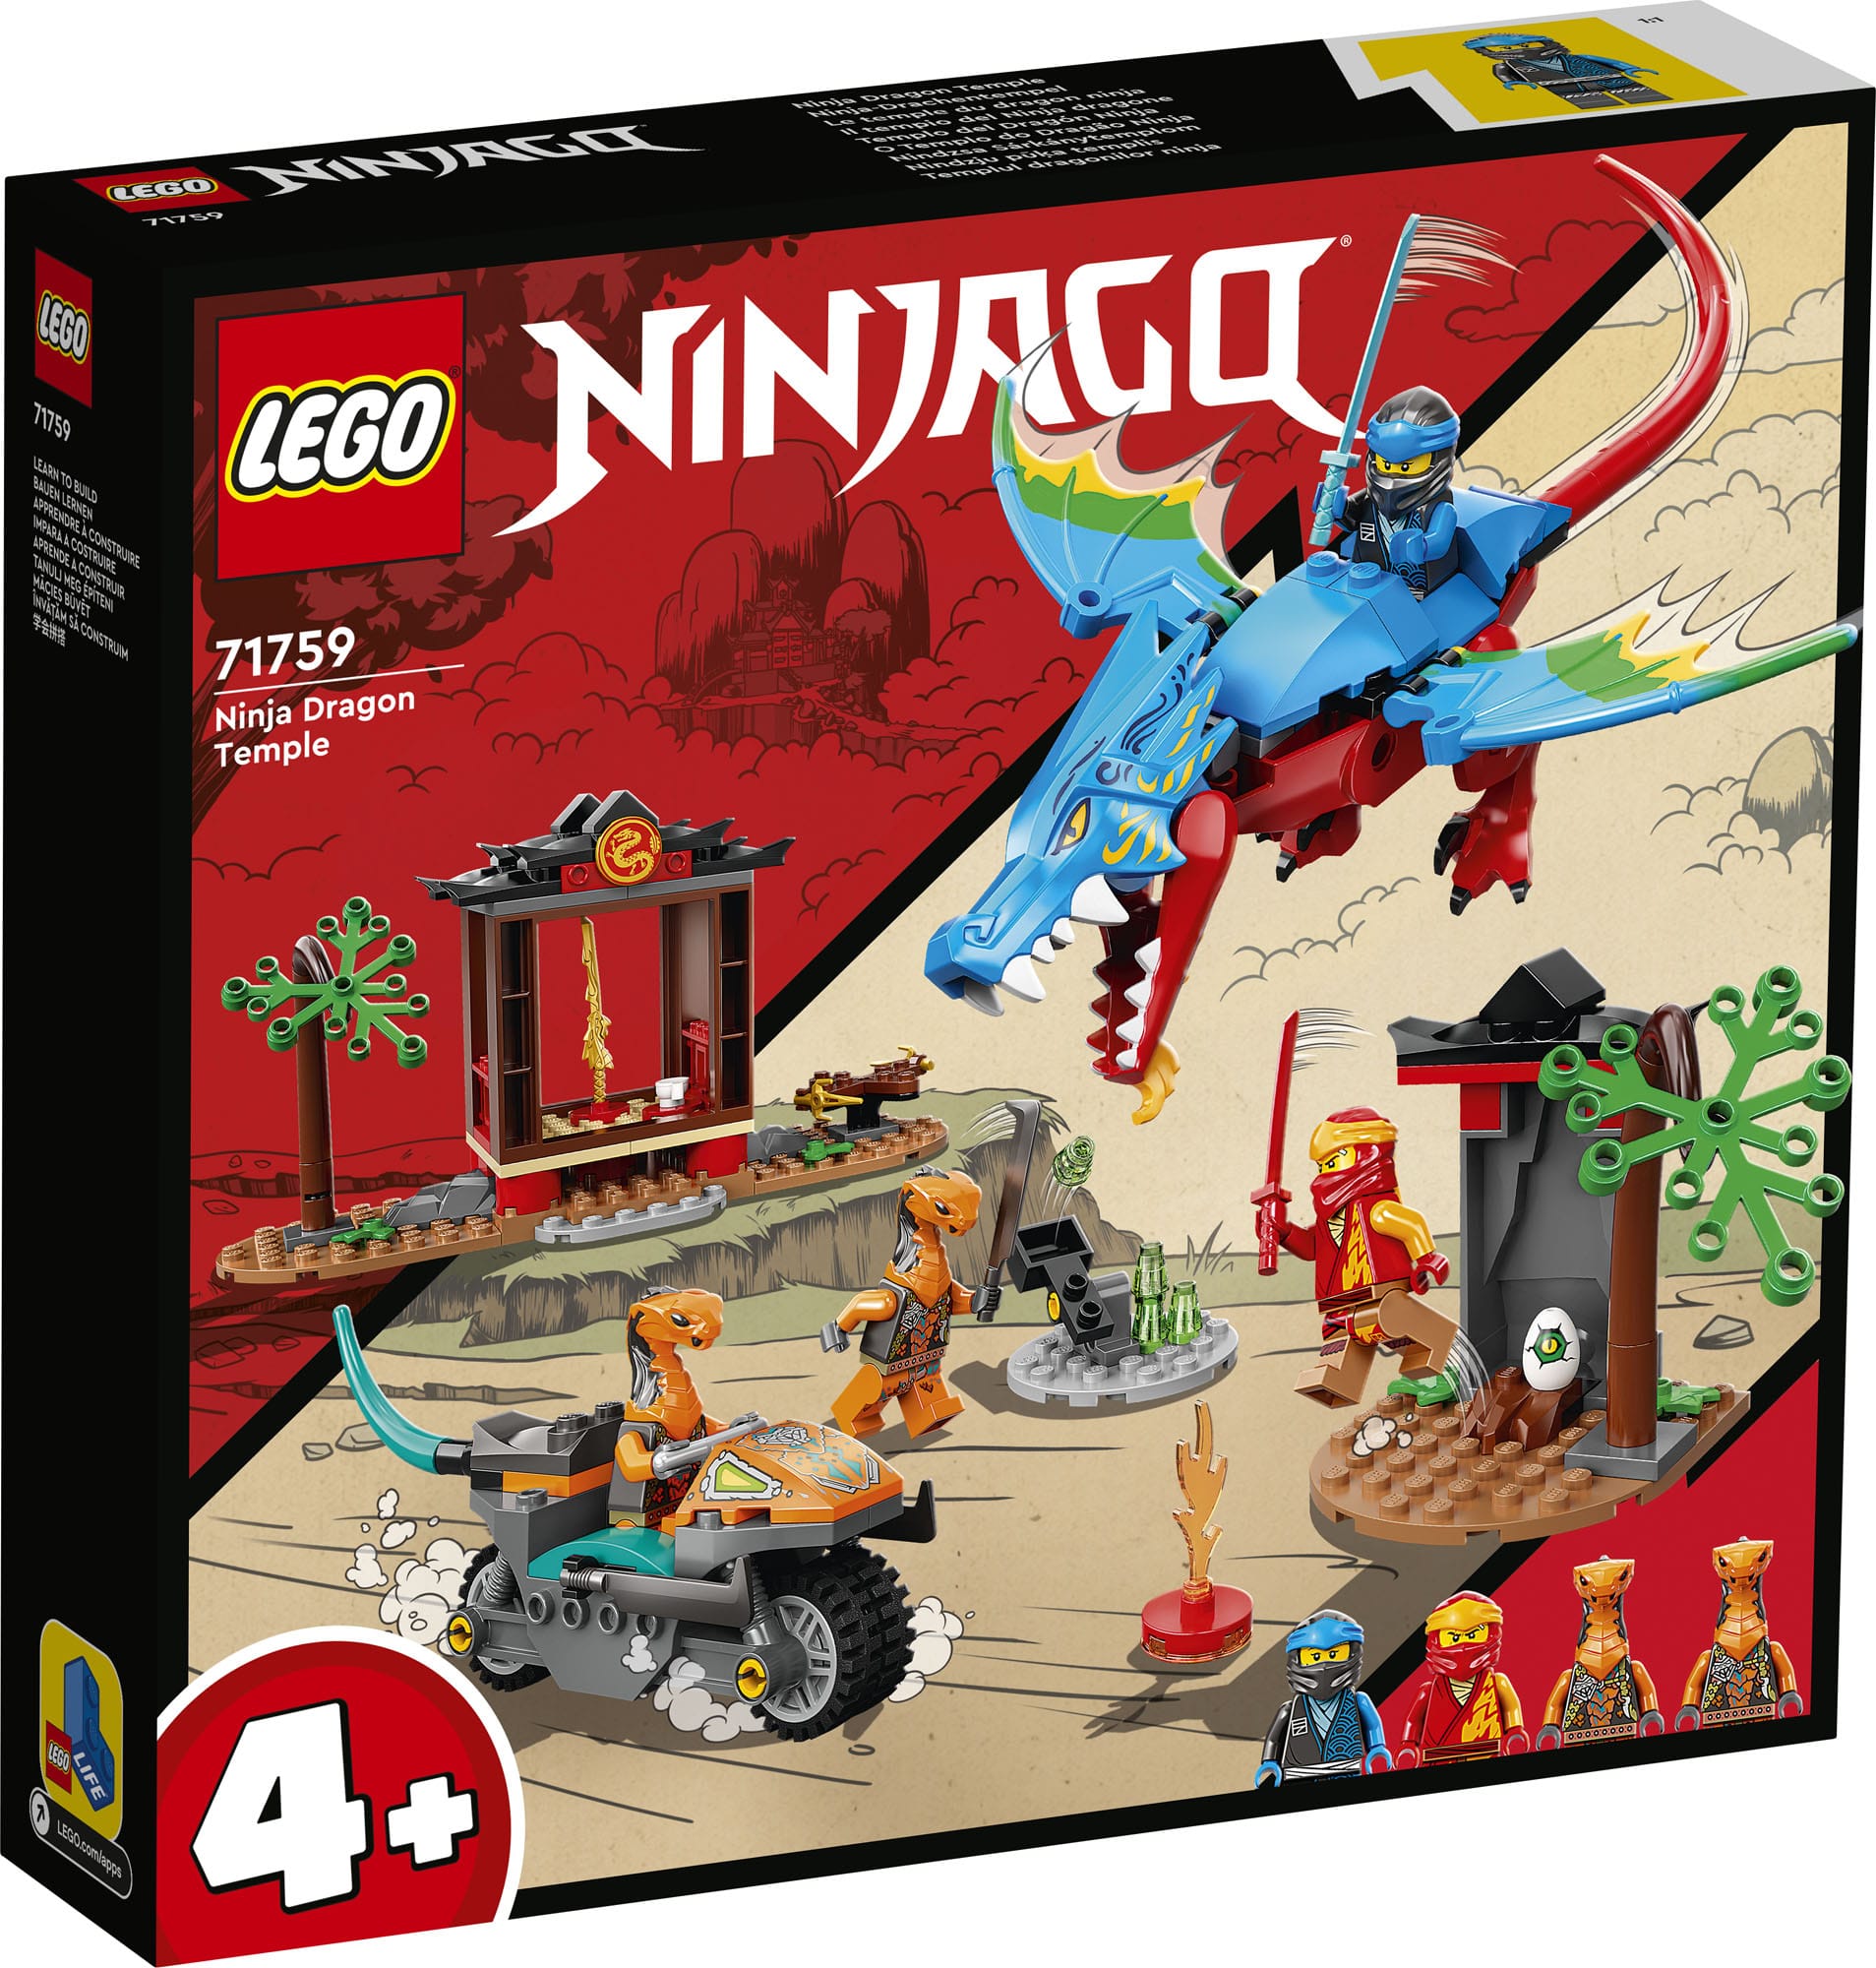 LEGO Ninjago Summer 2022 Sets Partially Revealed - The Brick Fan